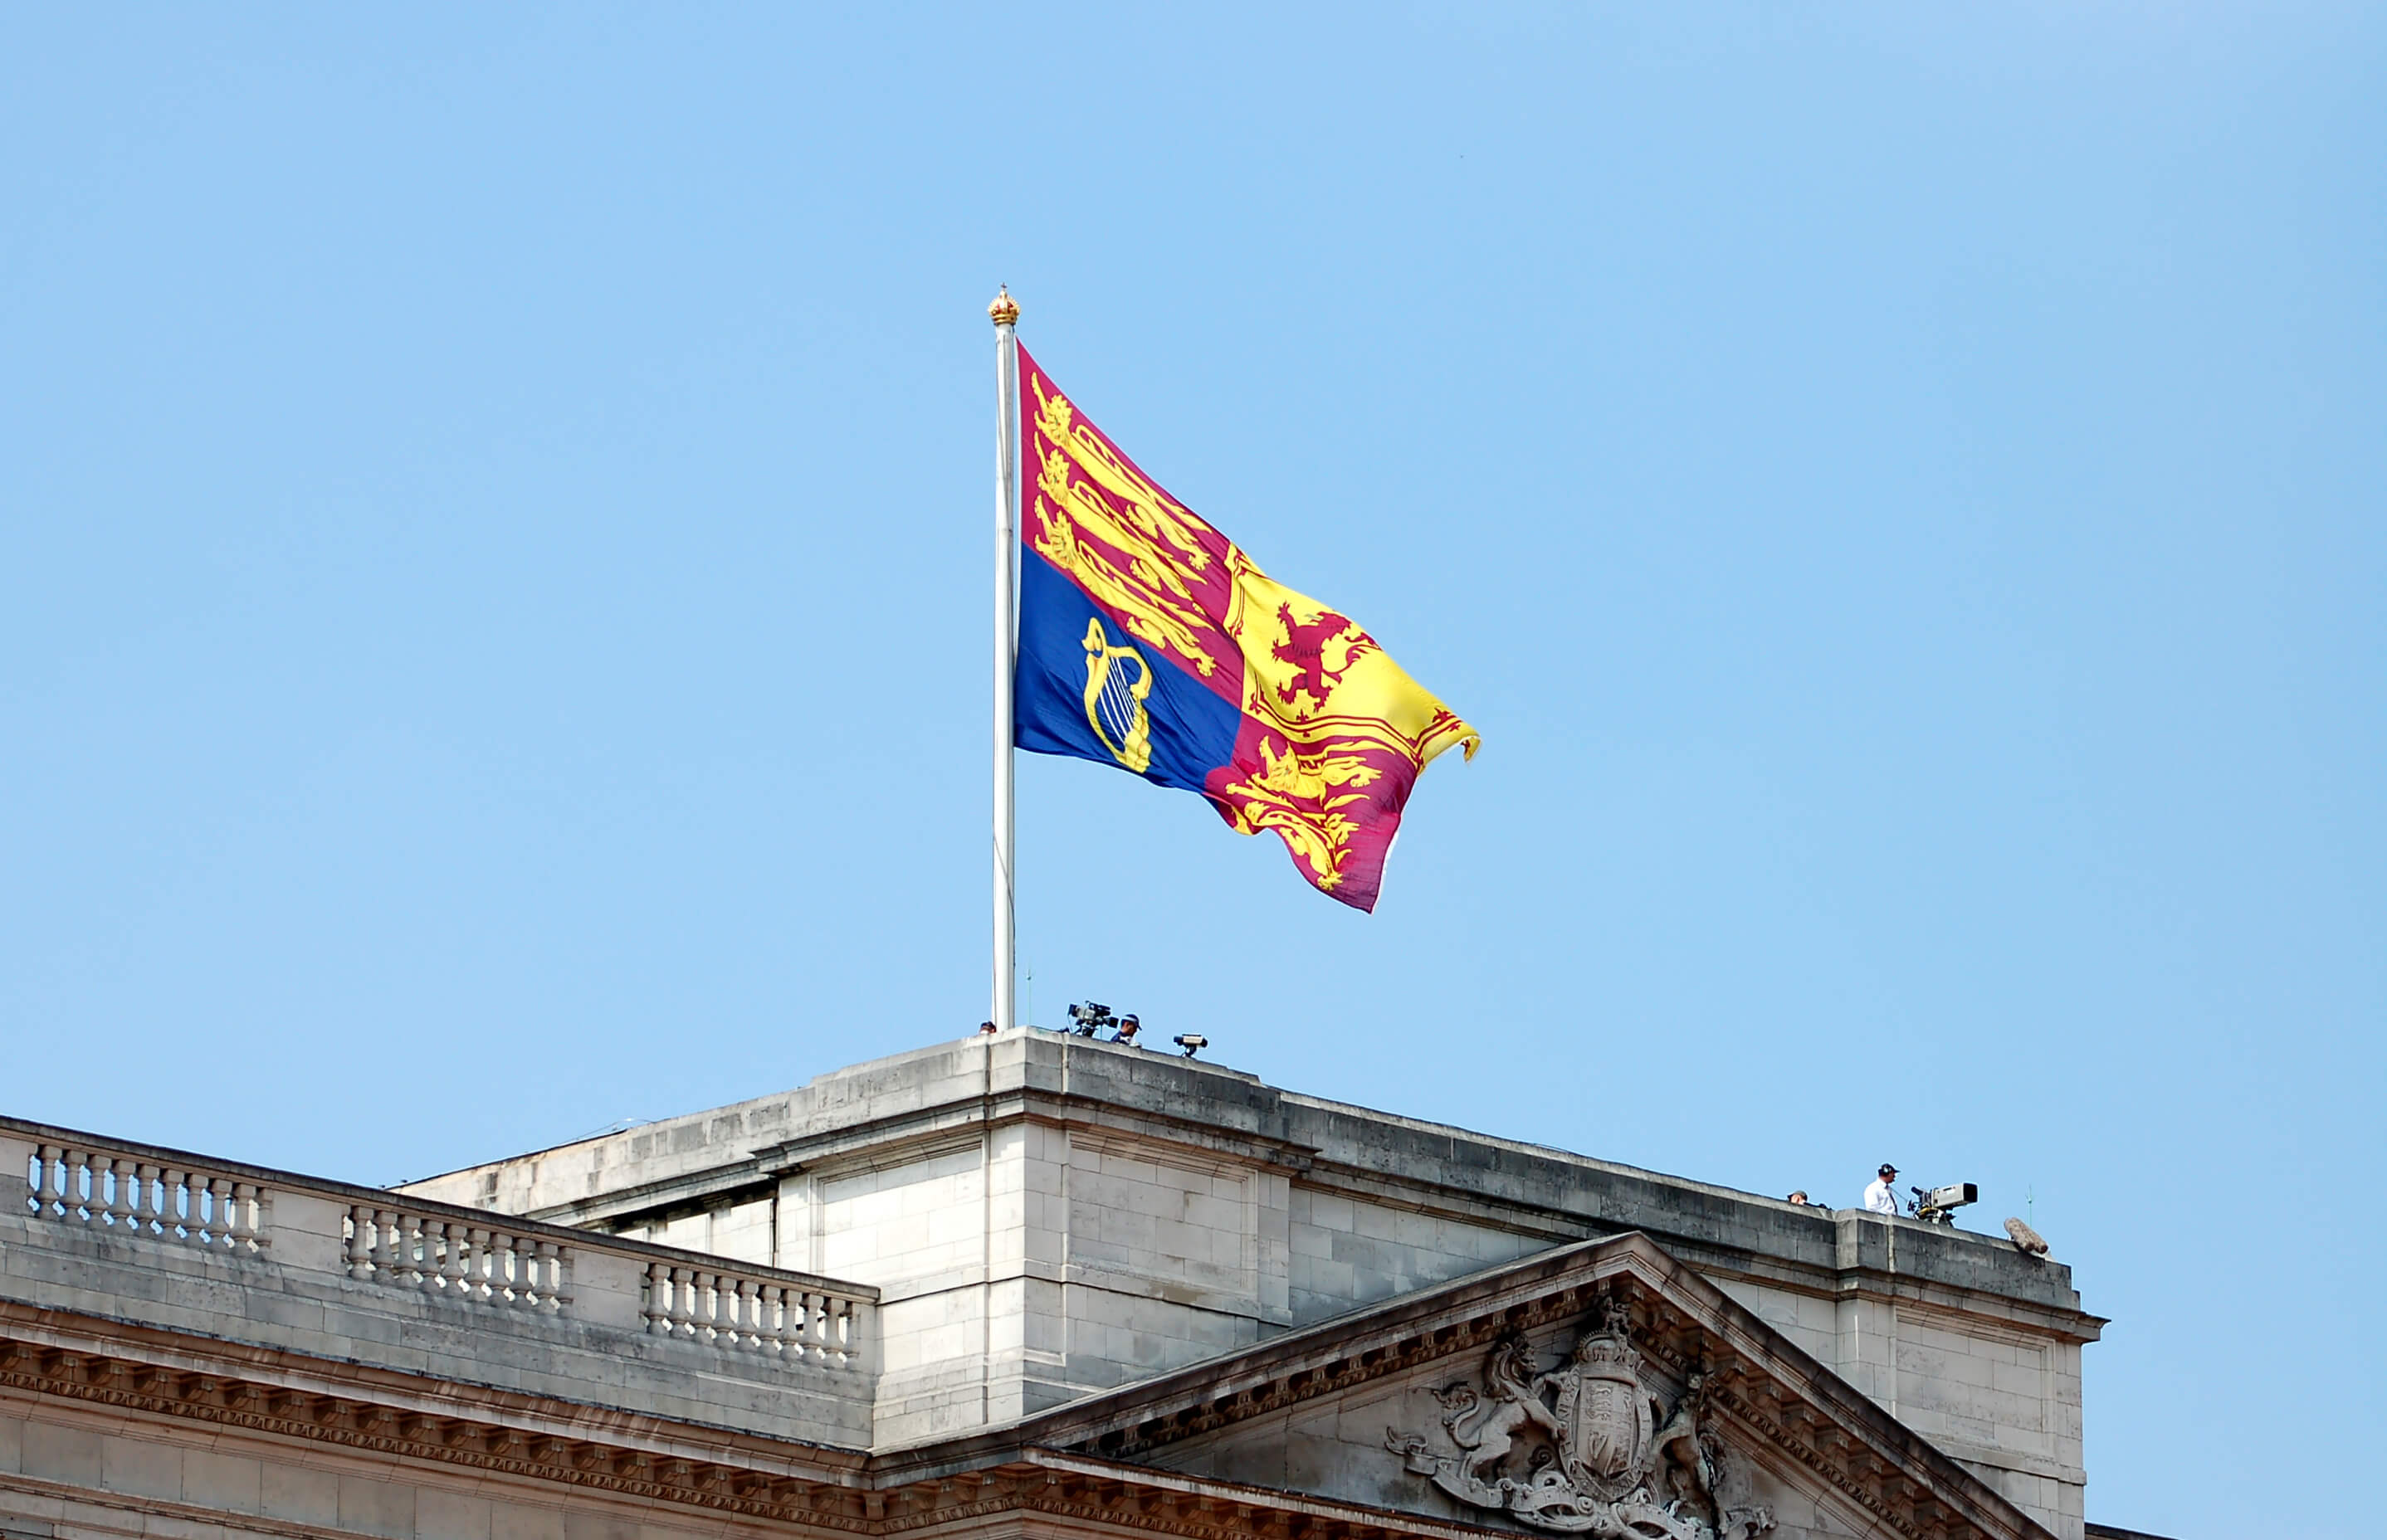 Estandarte Real del Reino Unido en Buckingham Palace